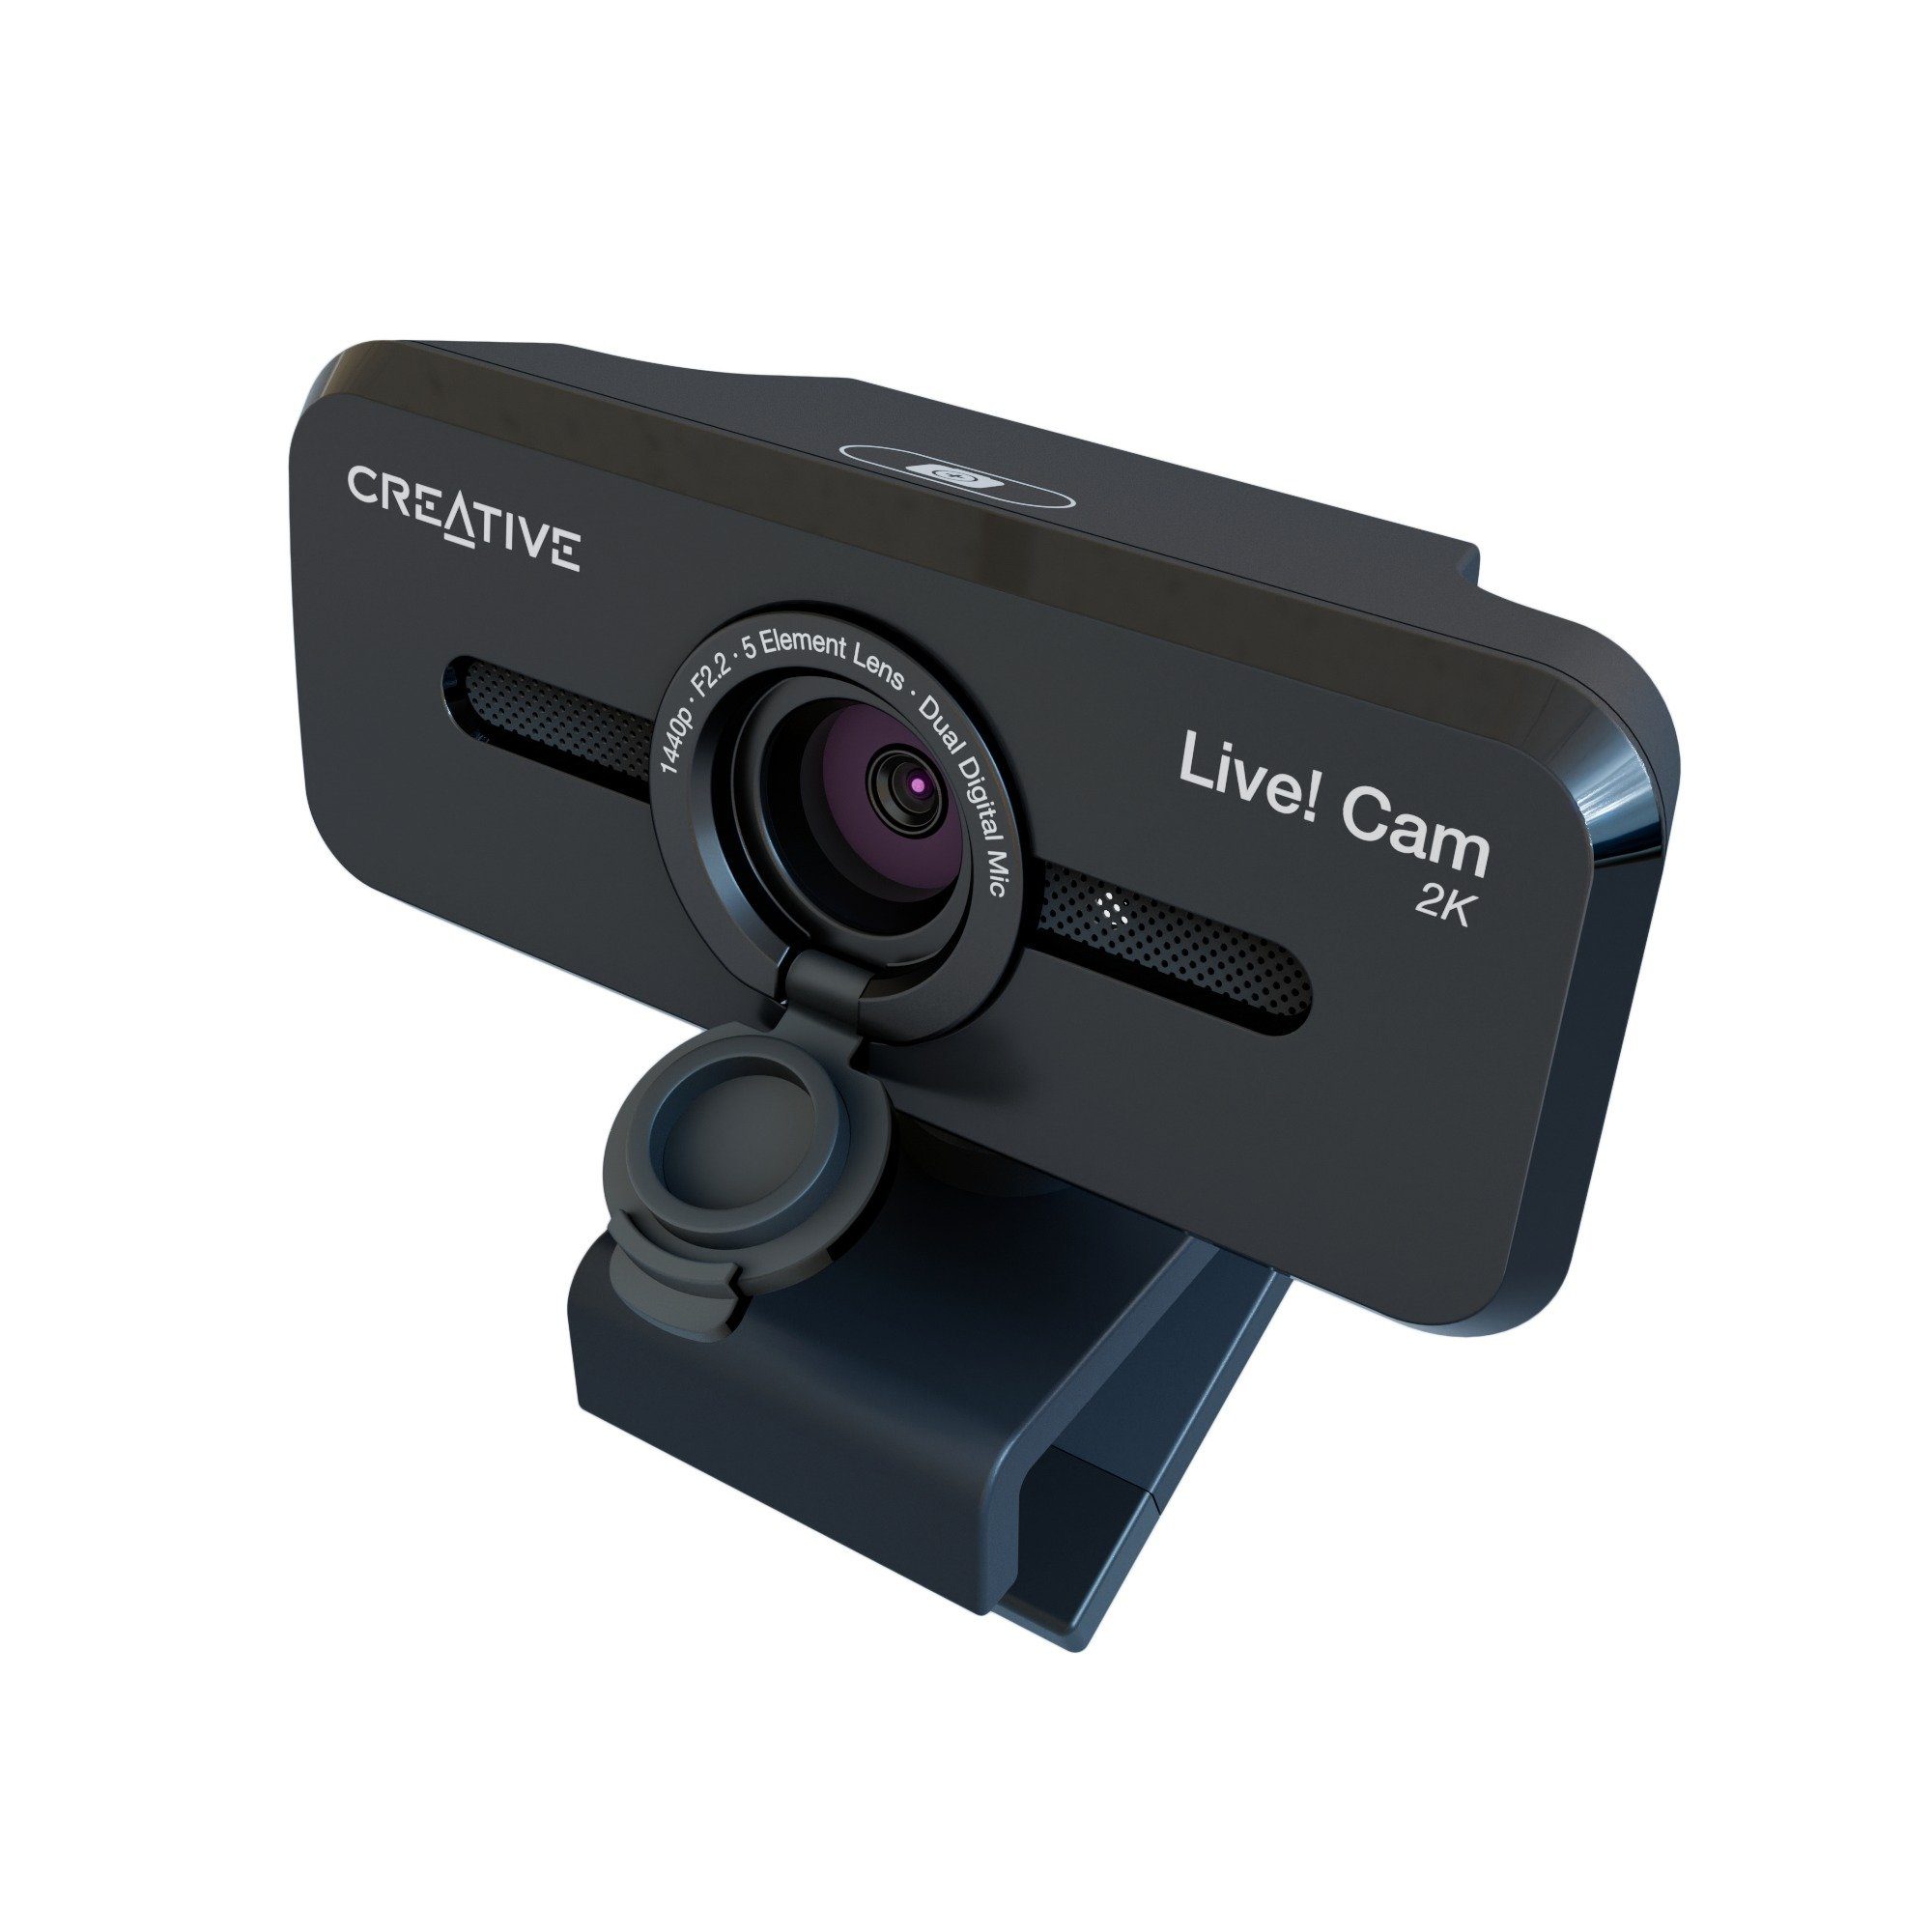 Creative Webcam V2 1080P Live! Cam Sync